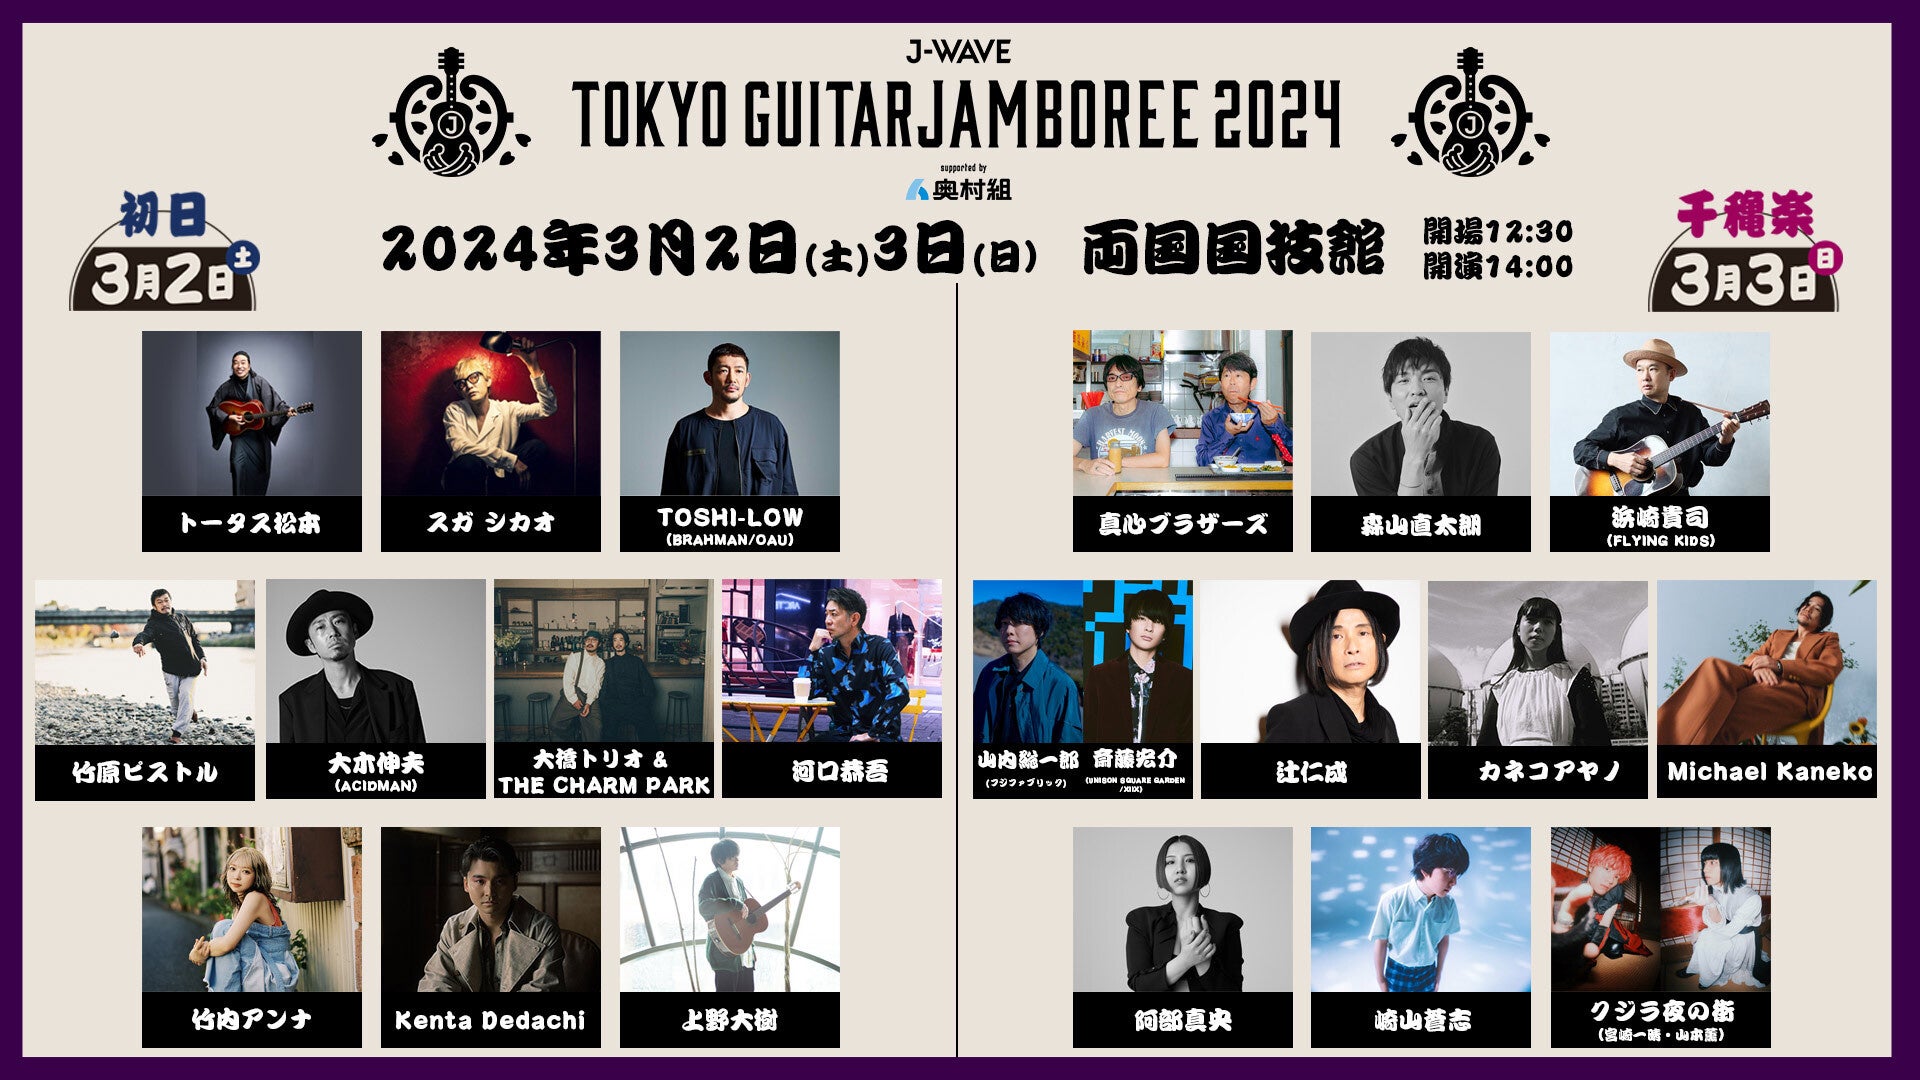 日本最大級のギター弾き語りフェス「J-WAVE TOKYO GUITAR JAMBOREE」に特別協賛